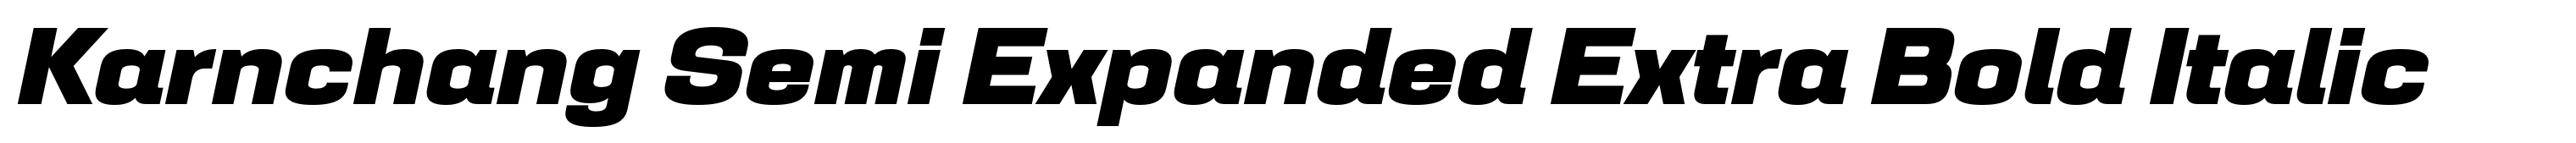 Karnchang Semi Expanded Extra Bold Italic